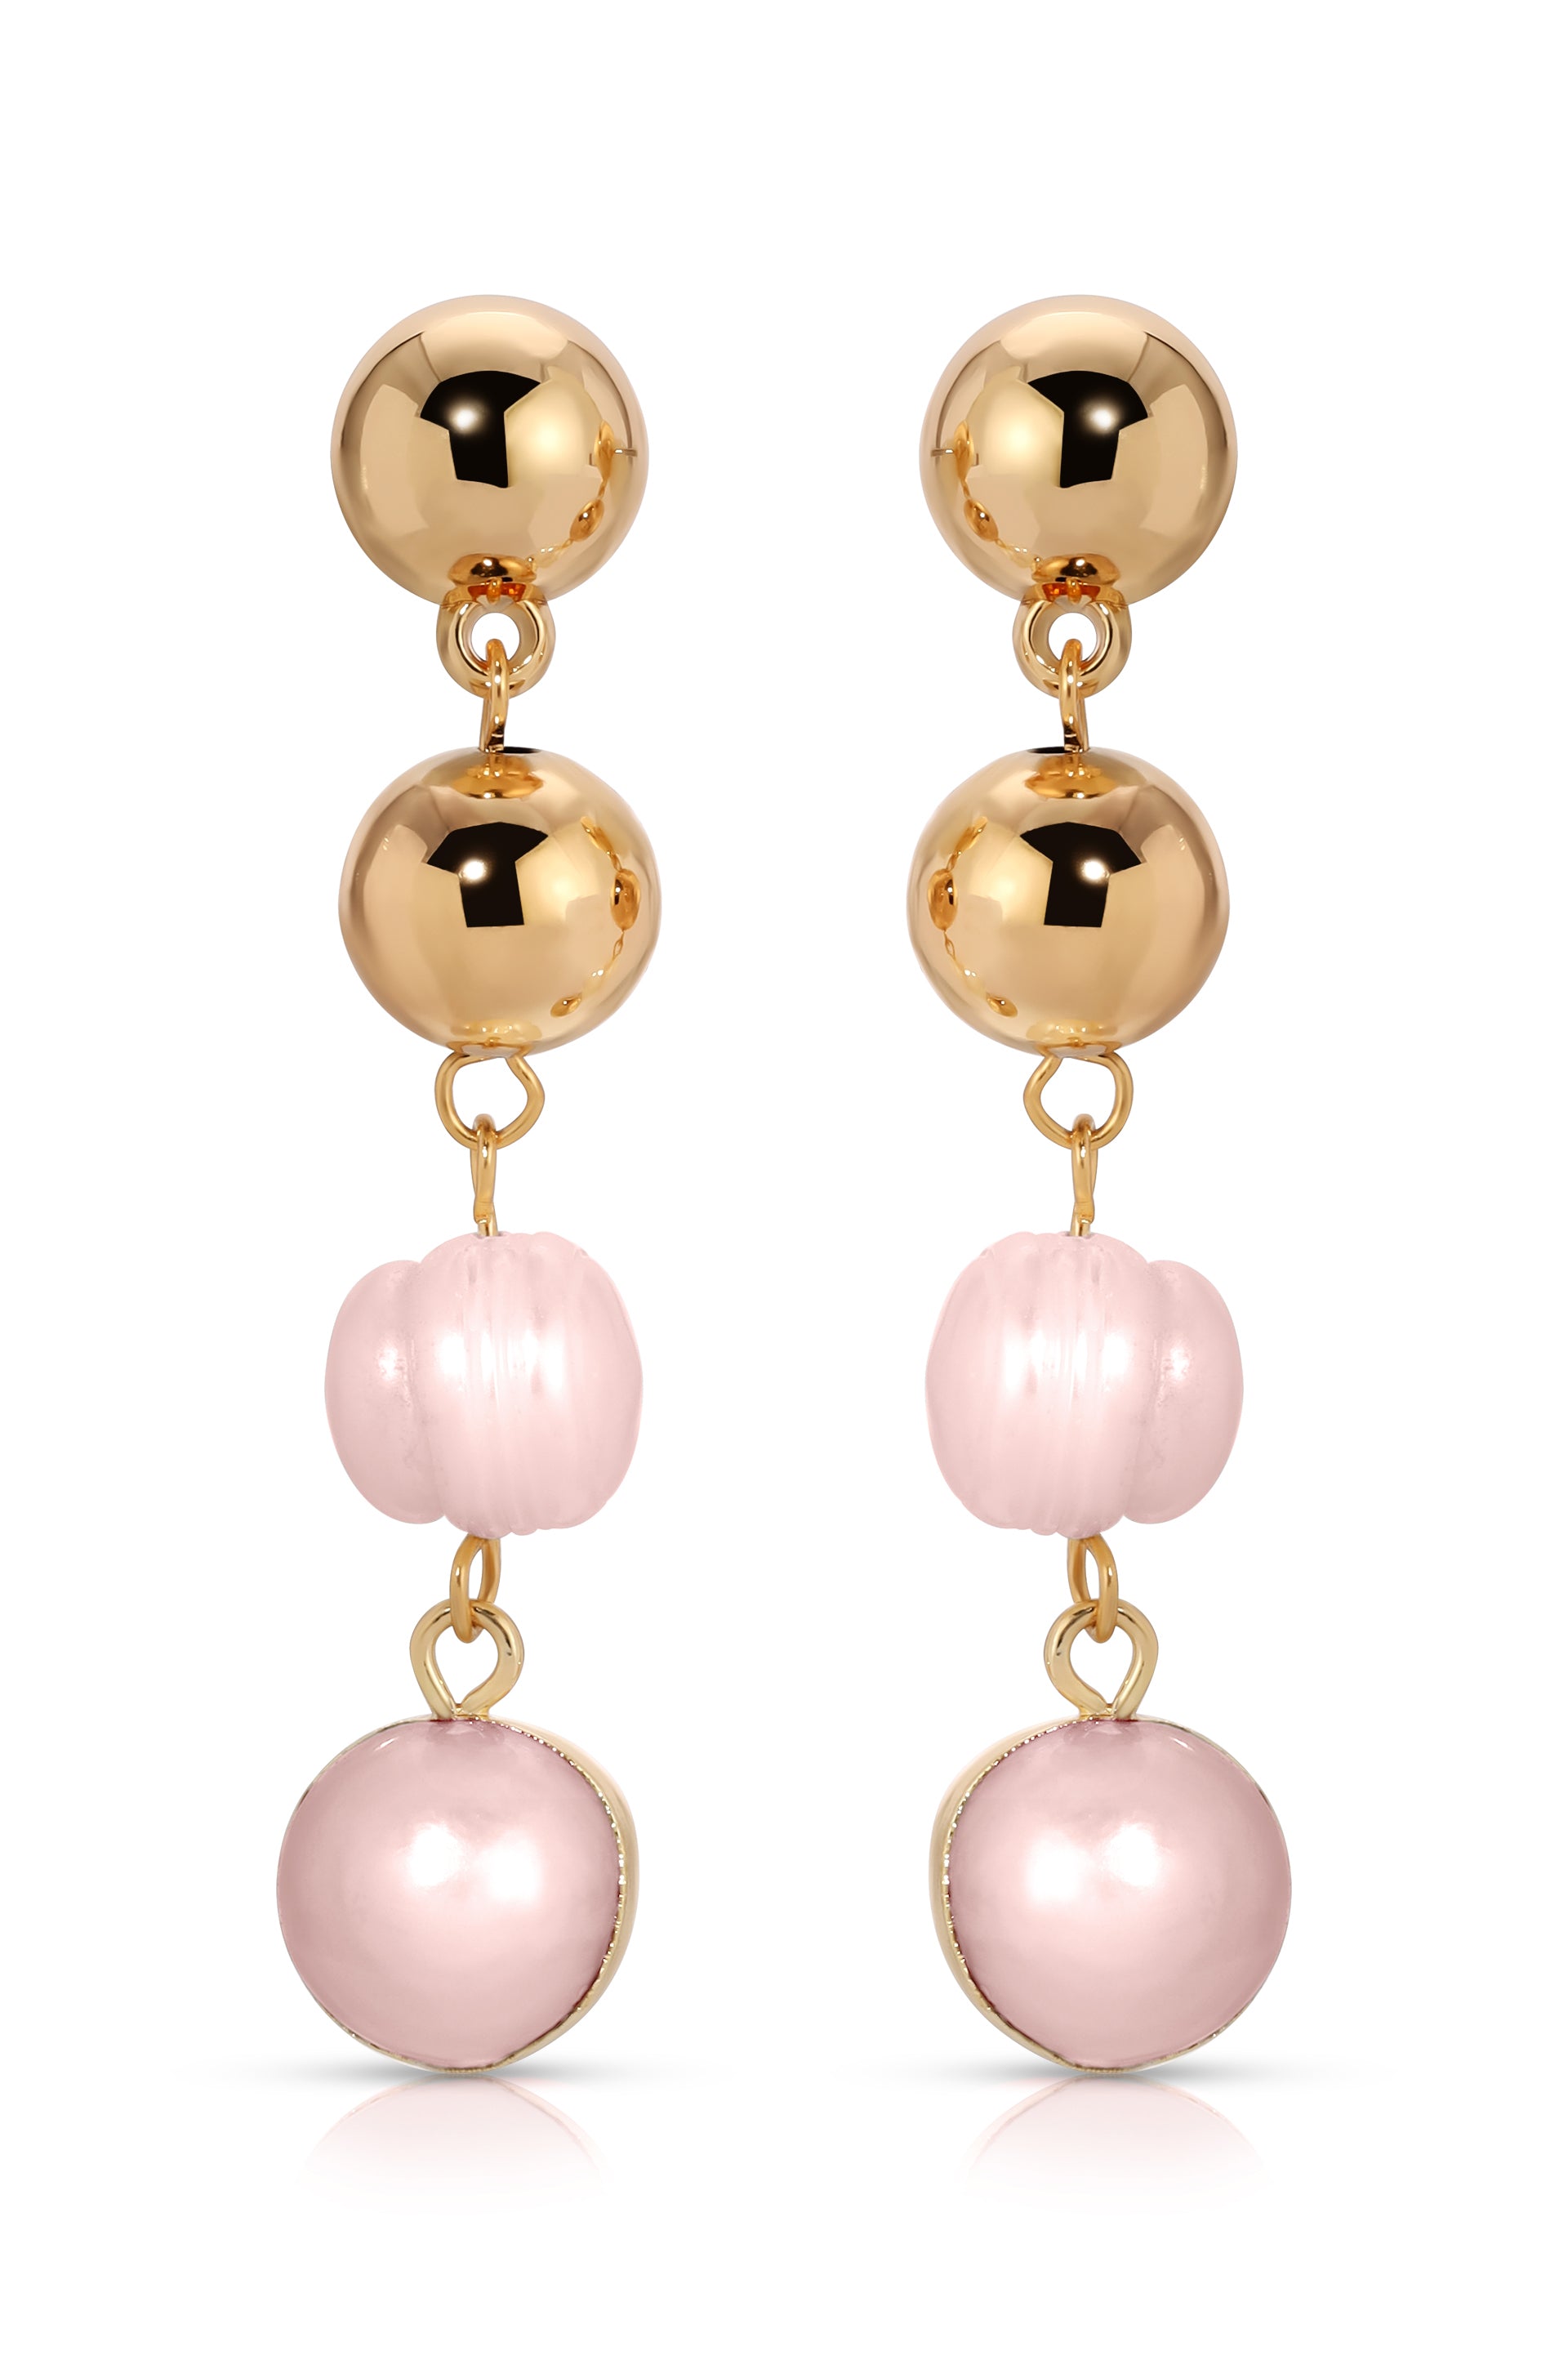 Resort Drop Earrings in pink pearl